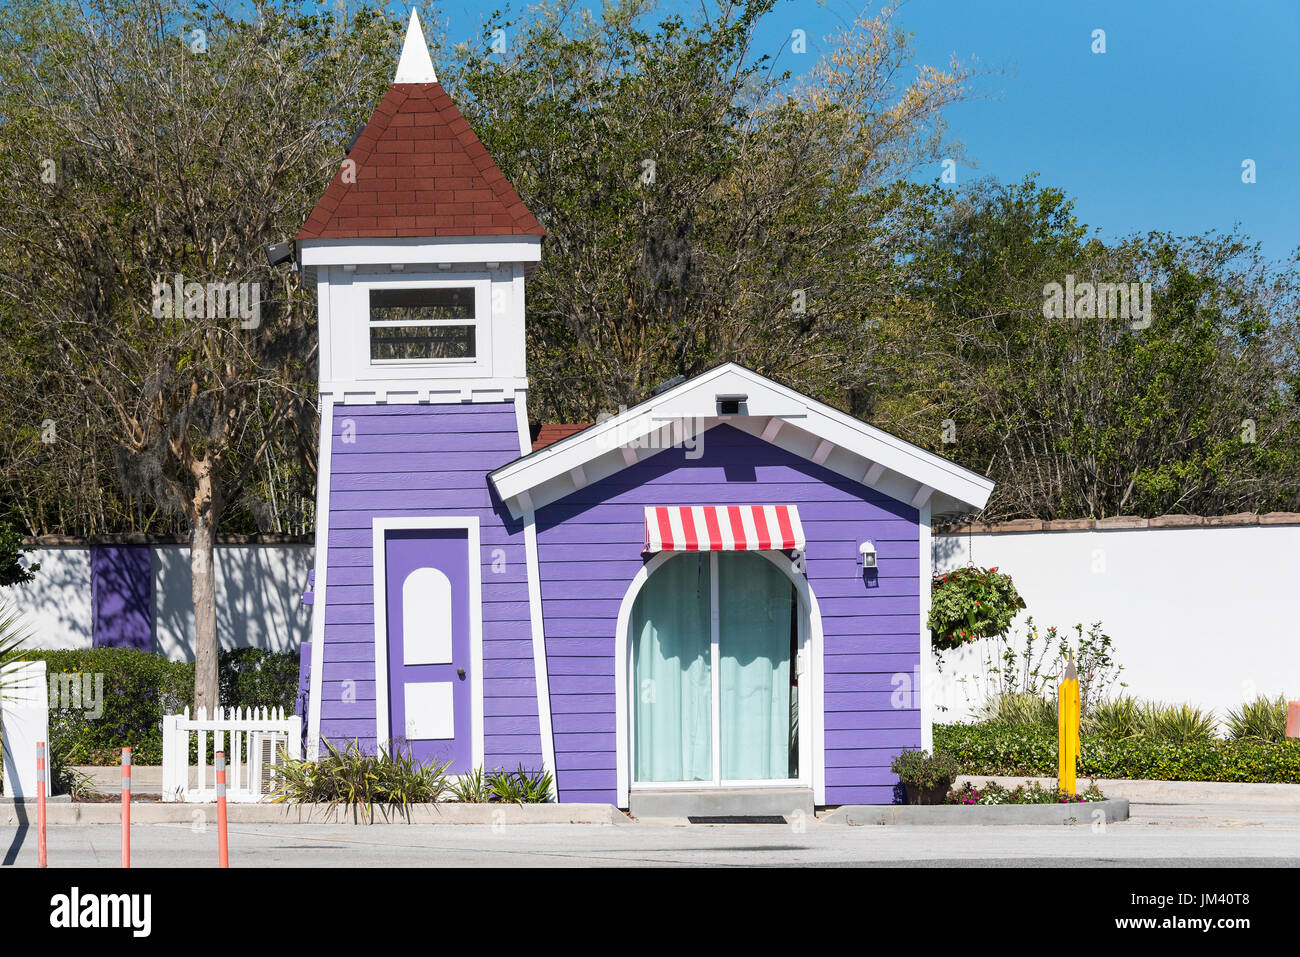 Entrada a la "Give Kids el mundo' Vacation Village en Kissimmee, Florida. Foto de stock